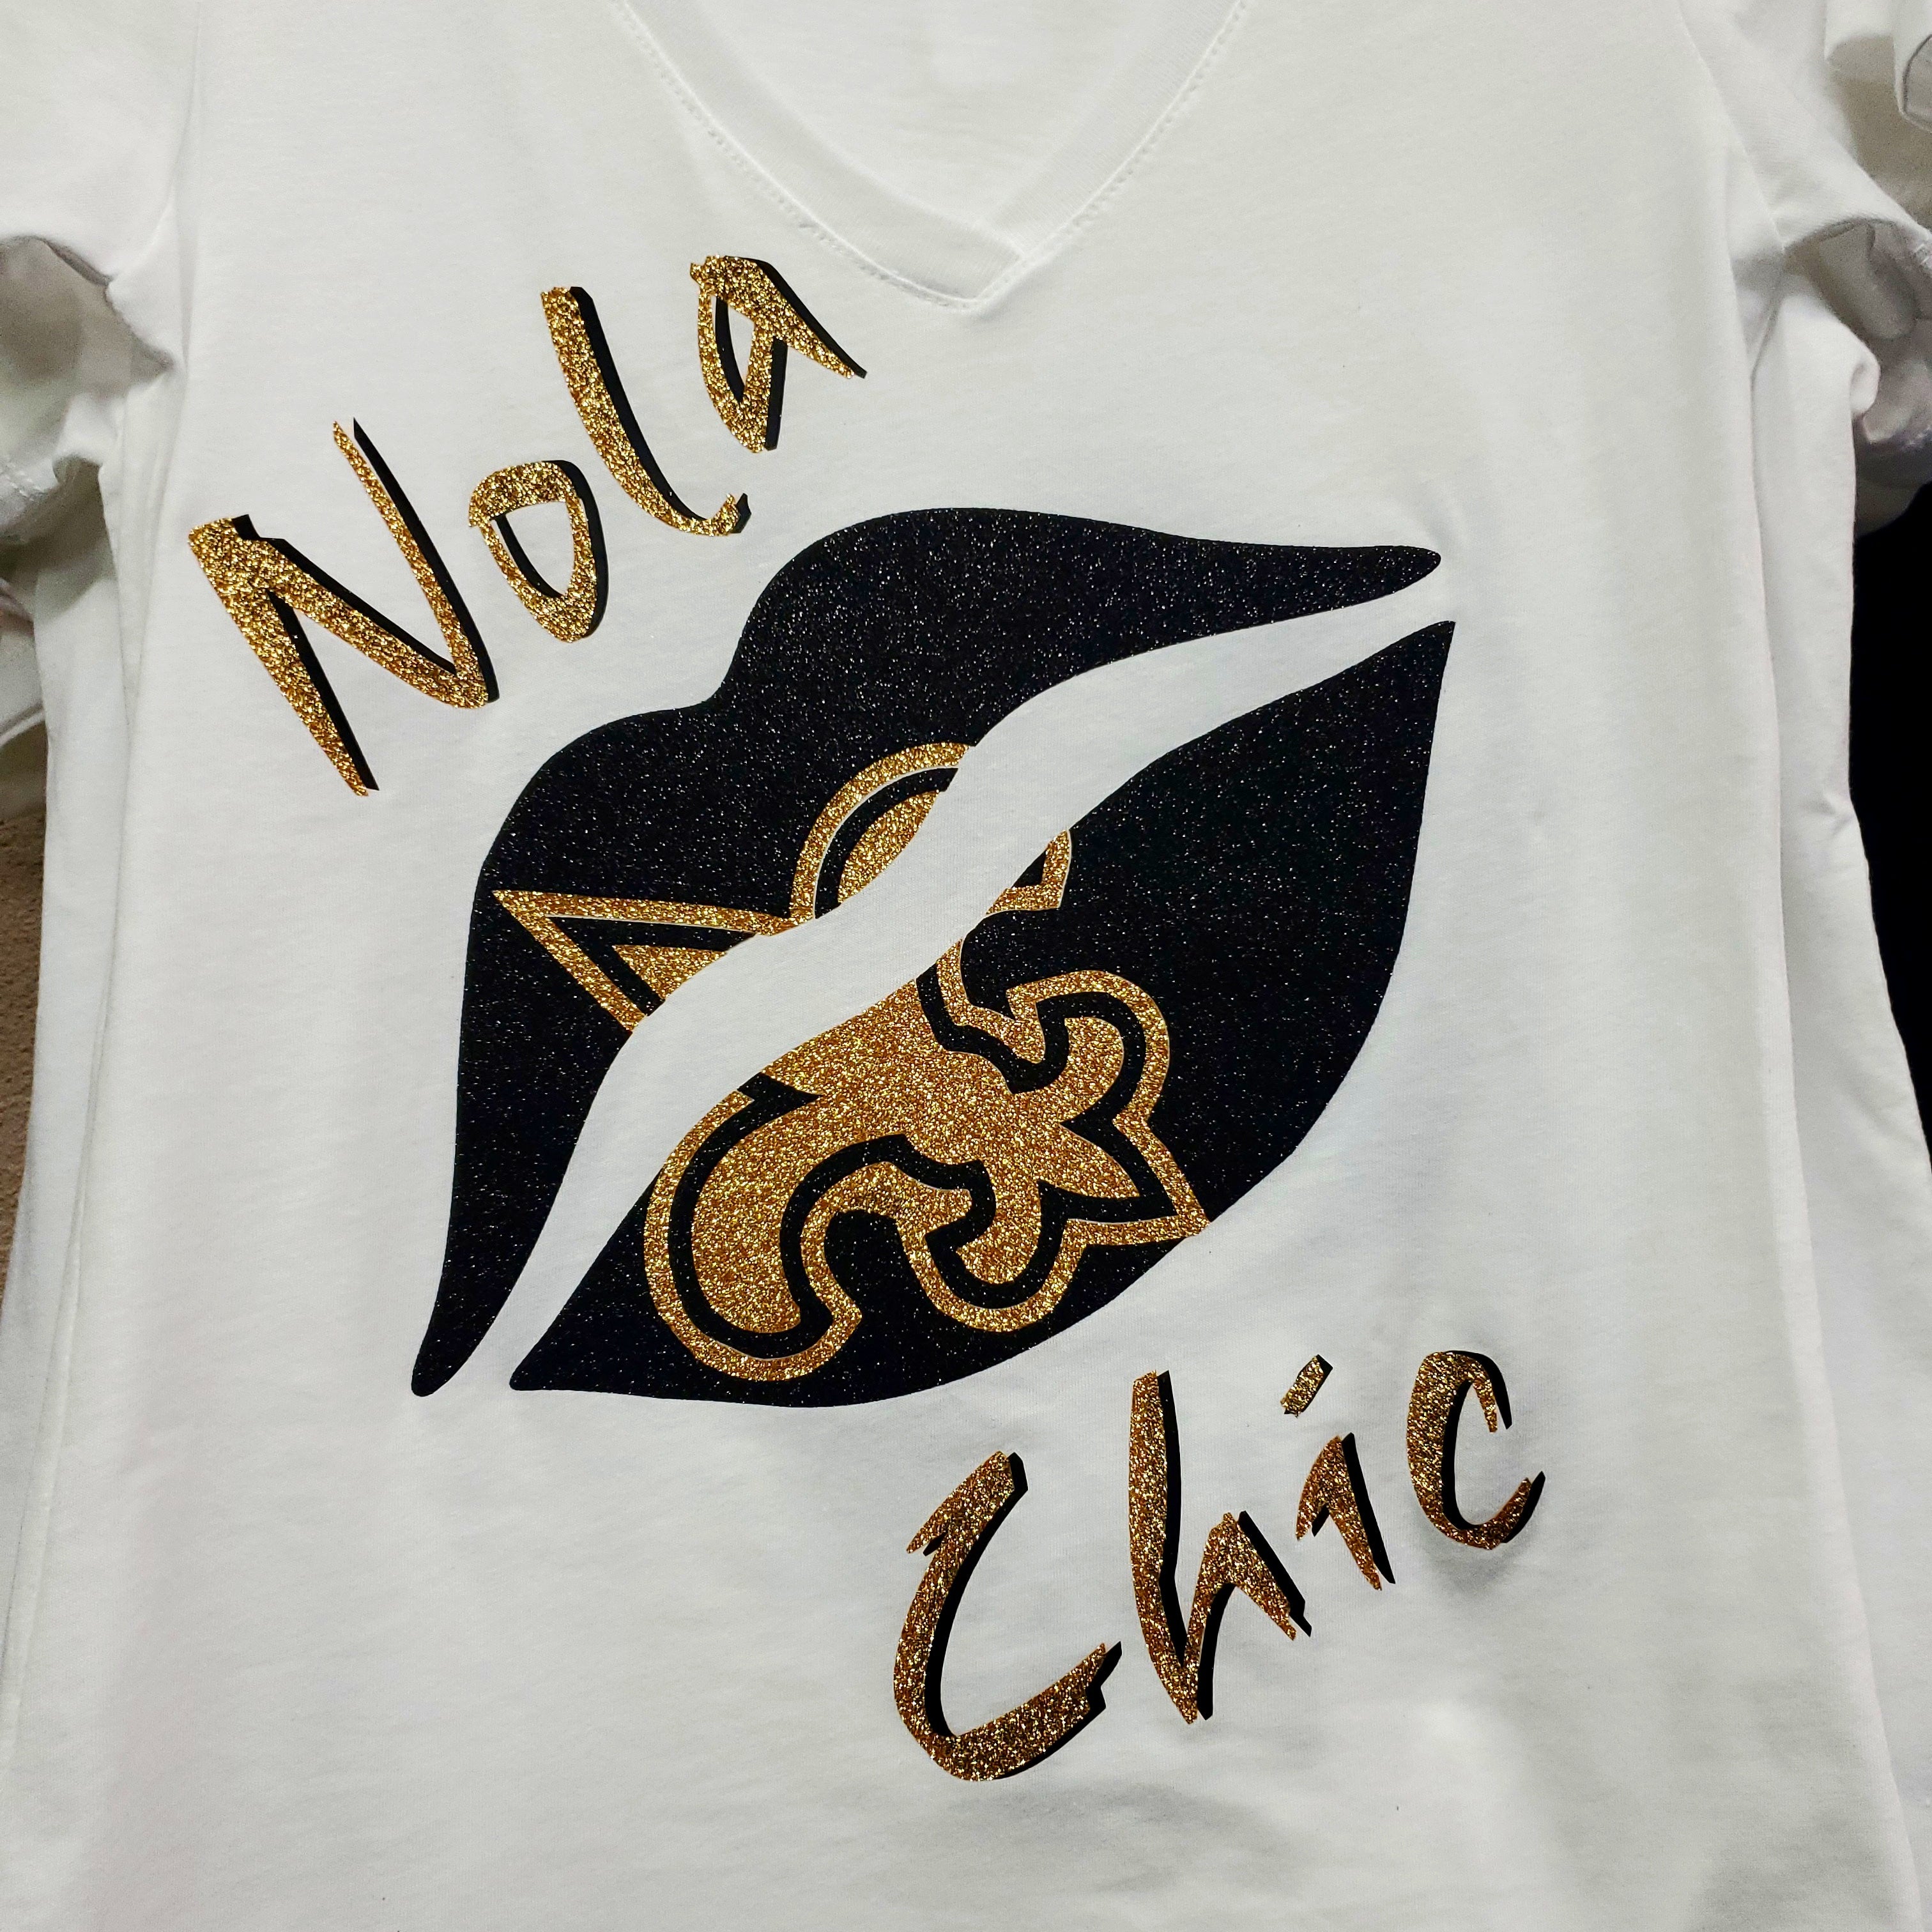 #Nola Chic shirts white